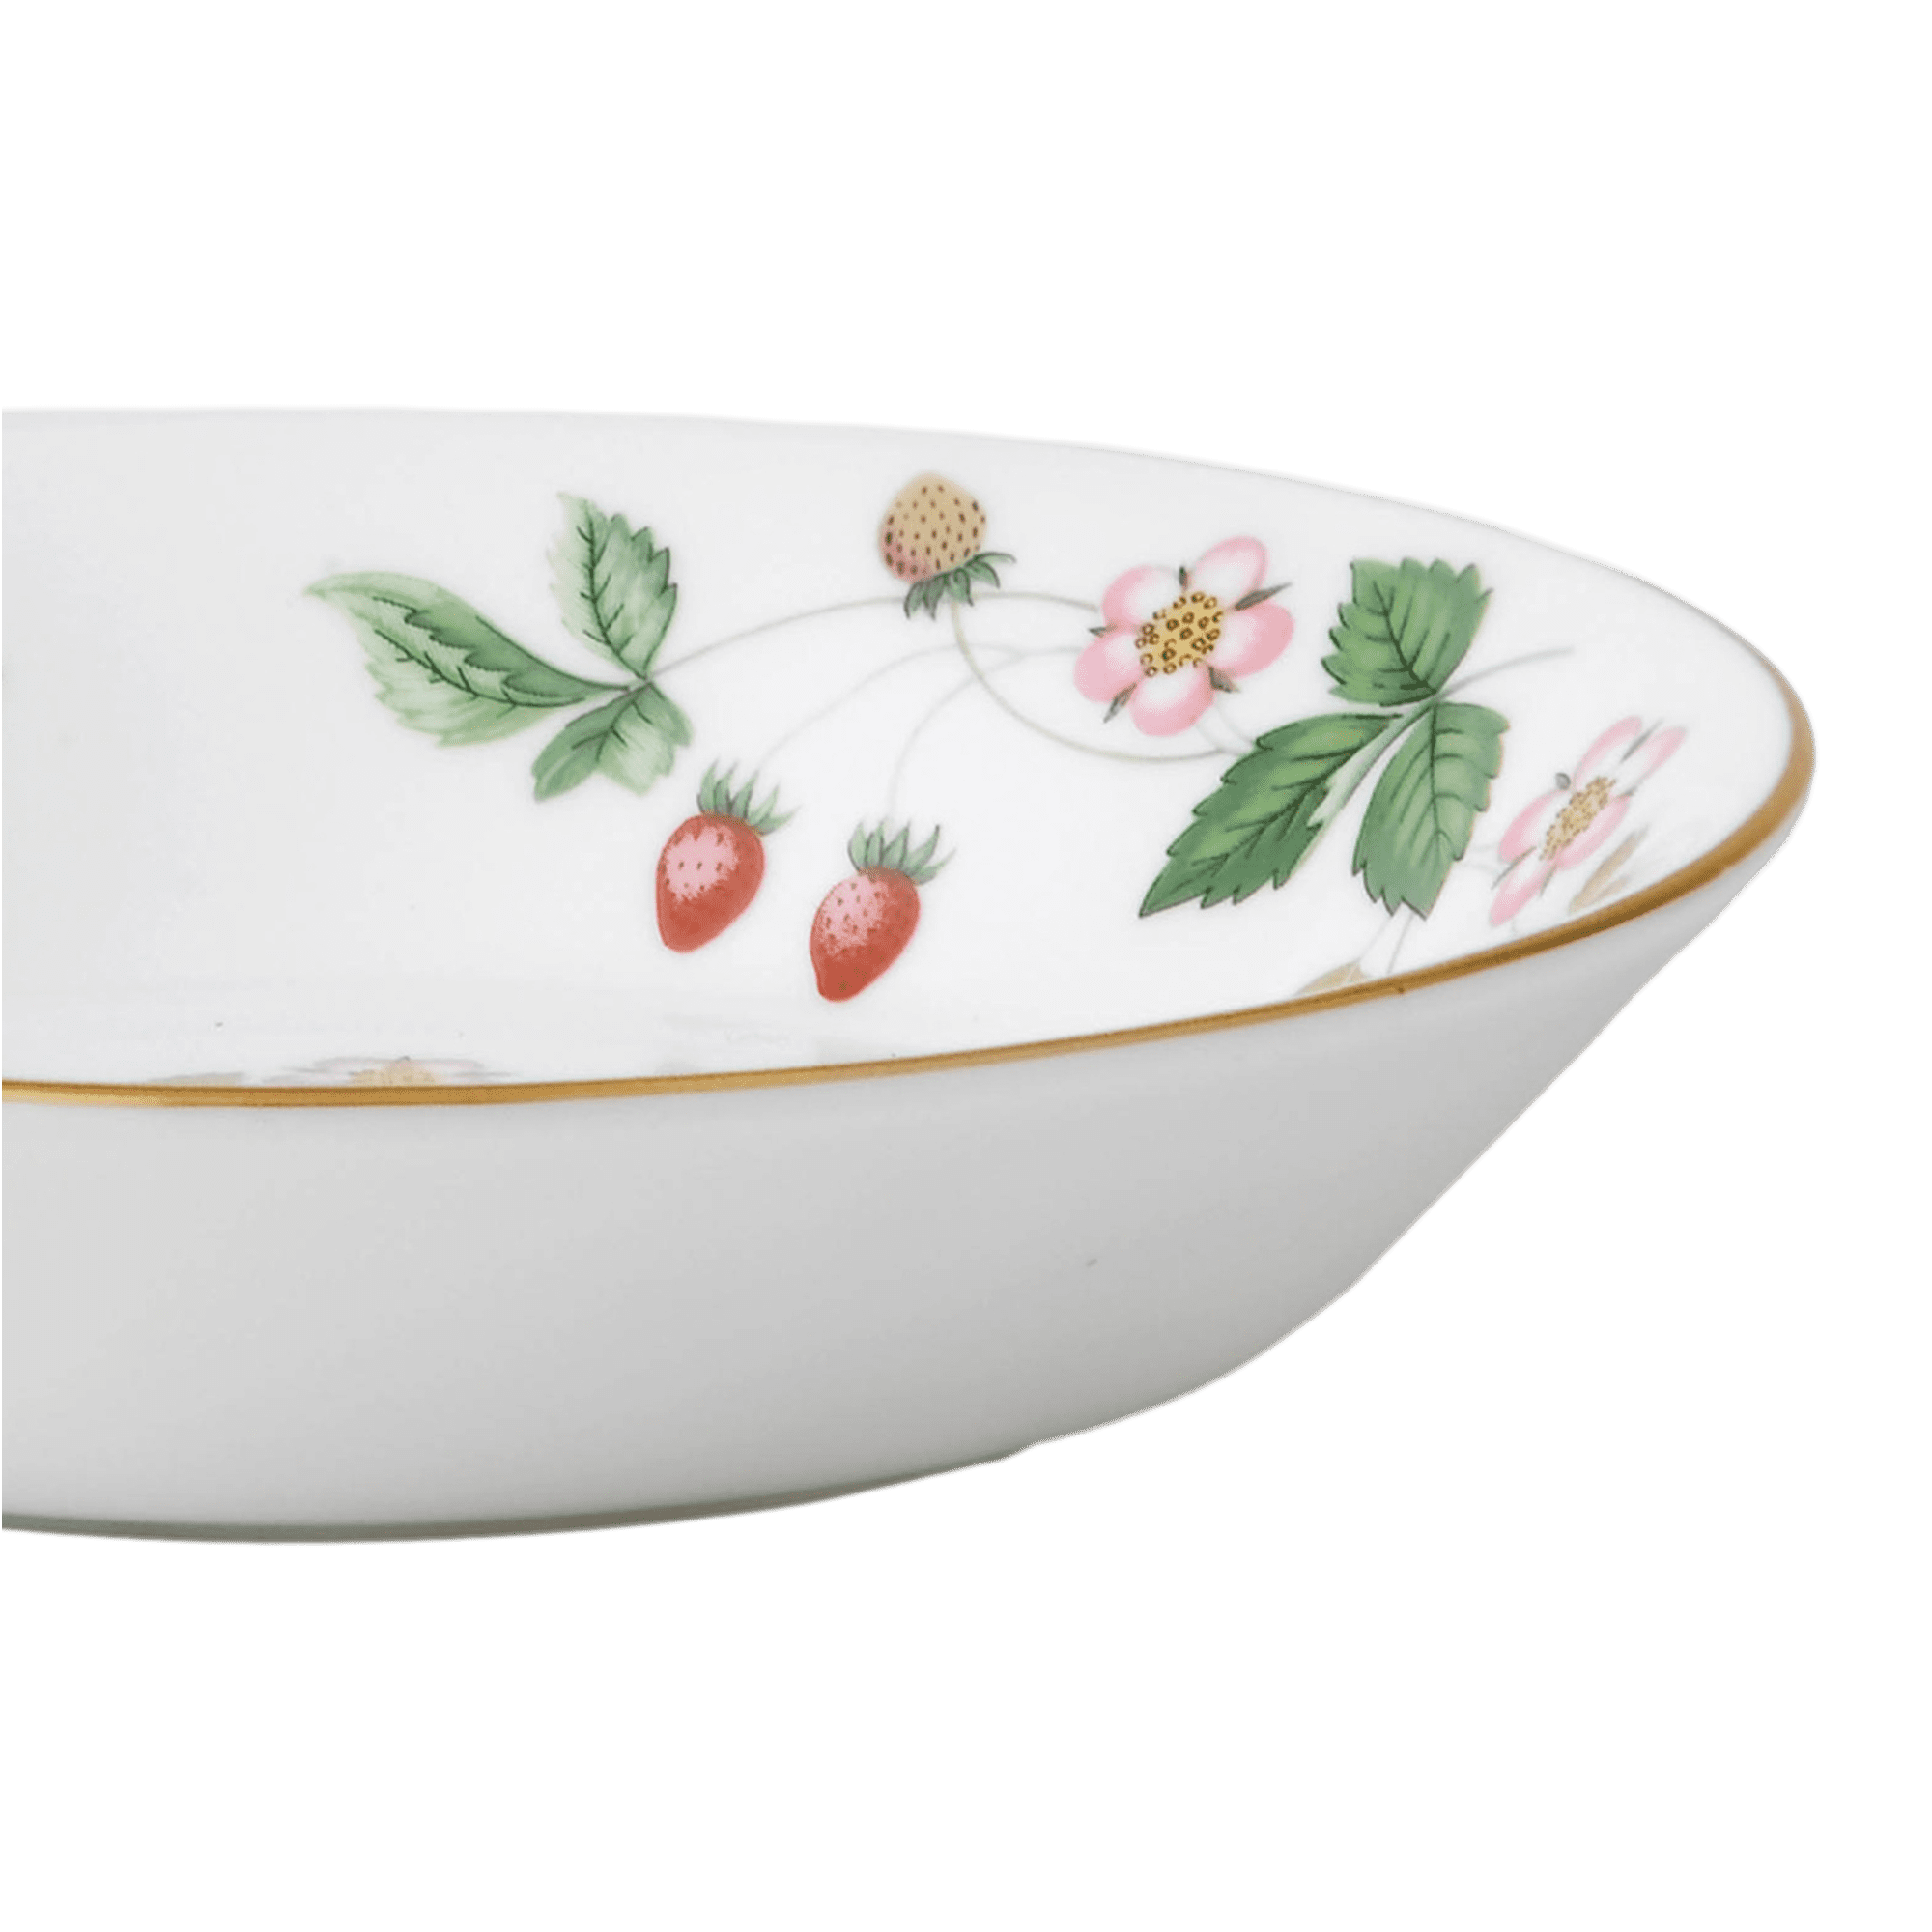 Wild Strawberry Dessert Bowl